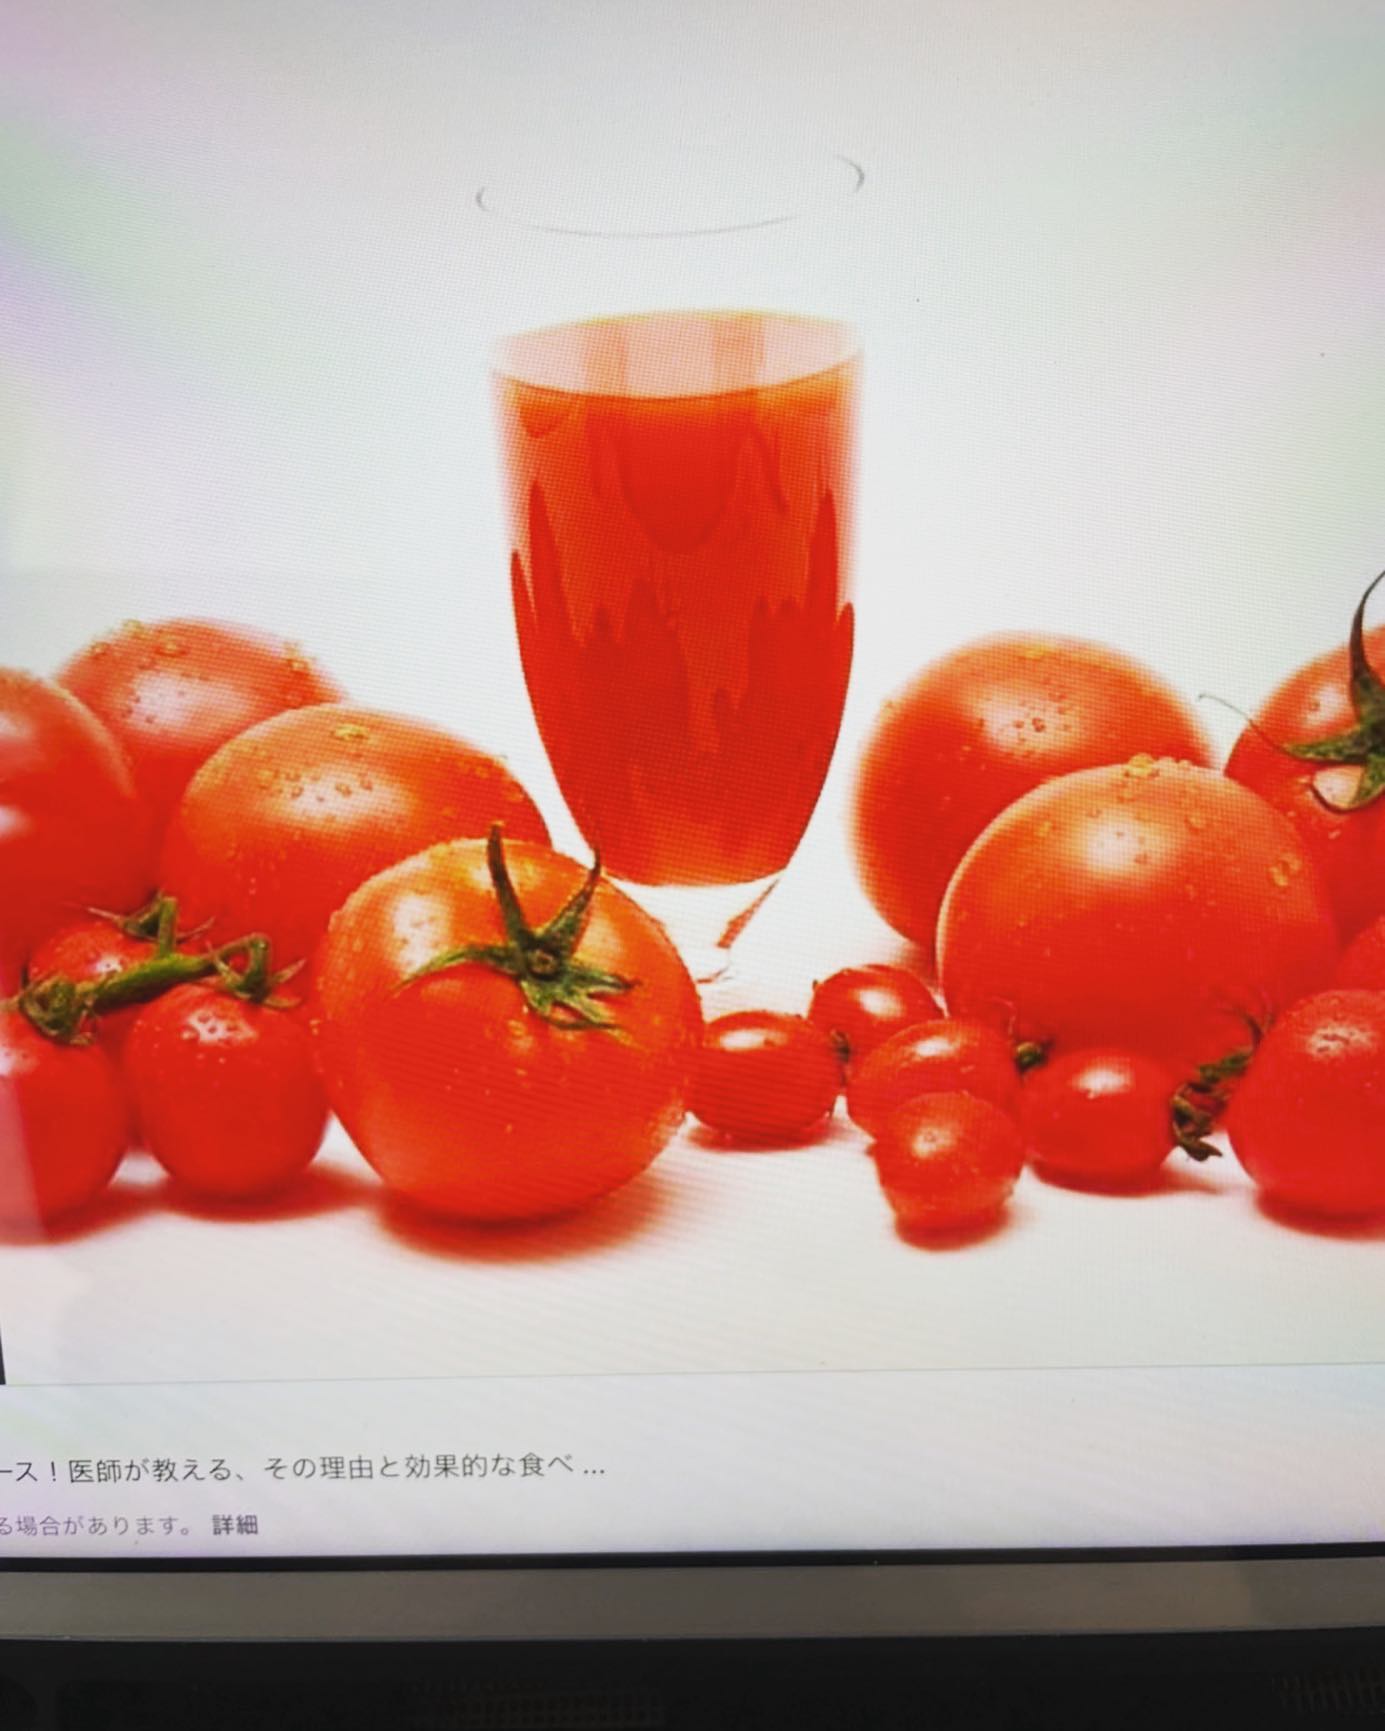 トマトの力！生のトマトよりトマトジュースの方がリコピンの栄養成分は効率良くとれます！抗酸化作用、動脈硬化予防、老化やガンの発生を抑えます。